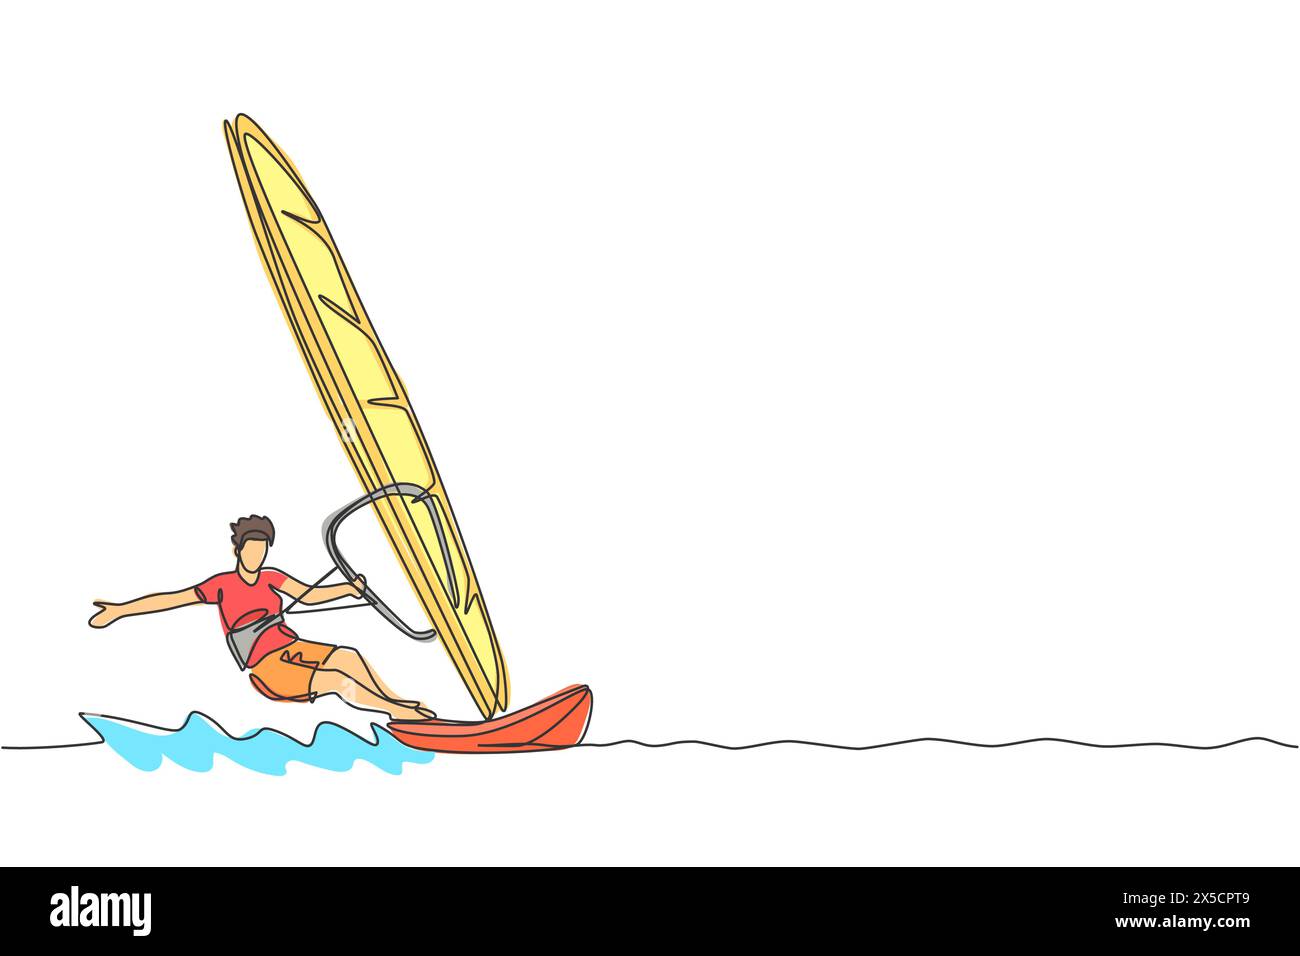 Linea singola continua di un giovane surfista sportivo che gioca a windsurf in mare. Concetto di sport marini estremamente pericolosi. Vacanze estive Illustrazione Vettoriale